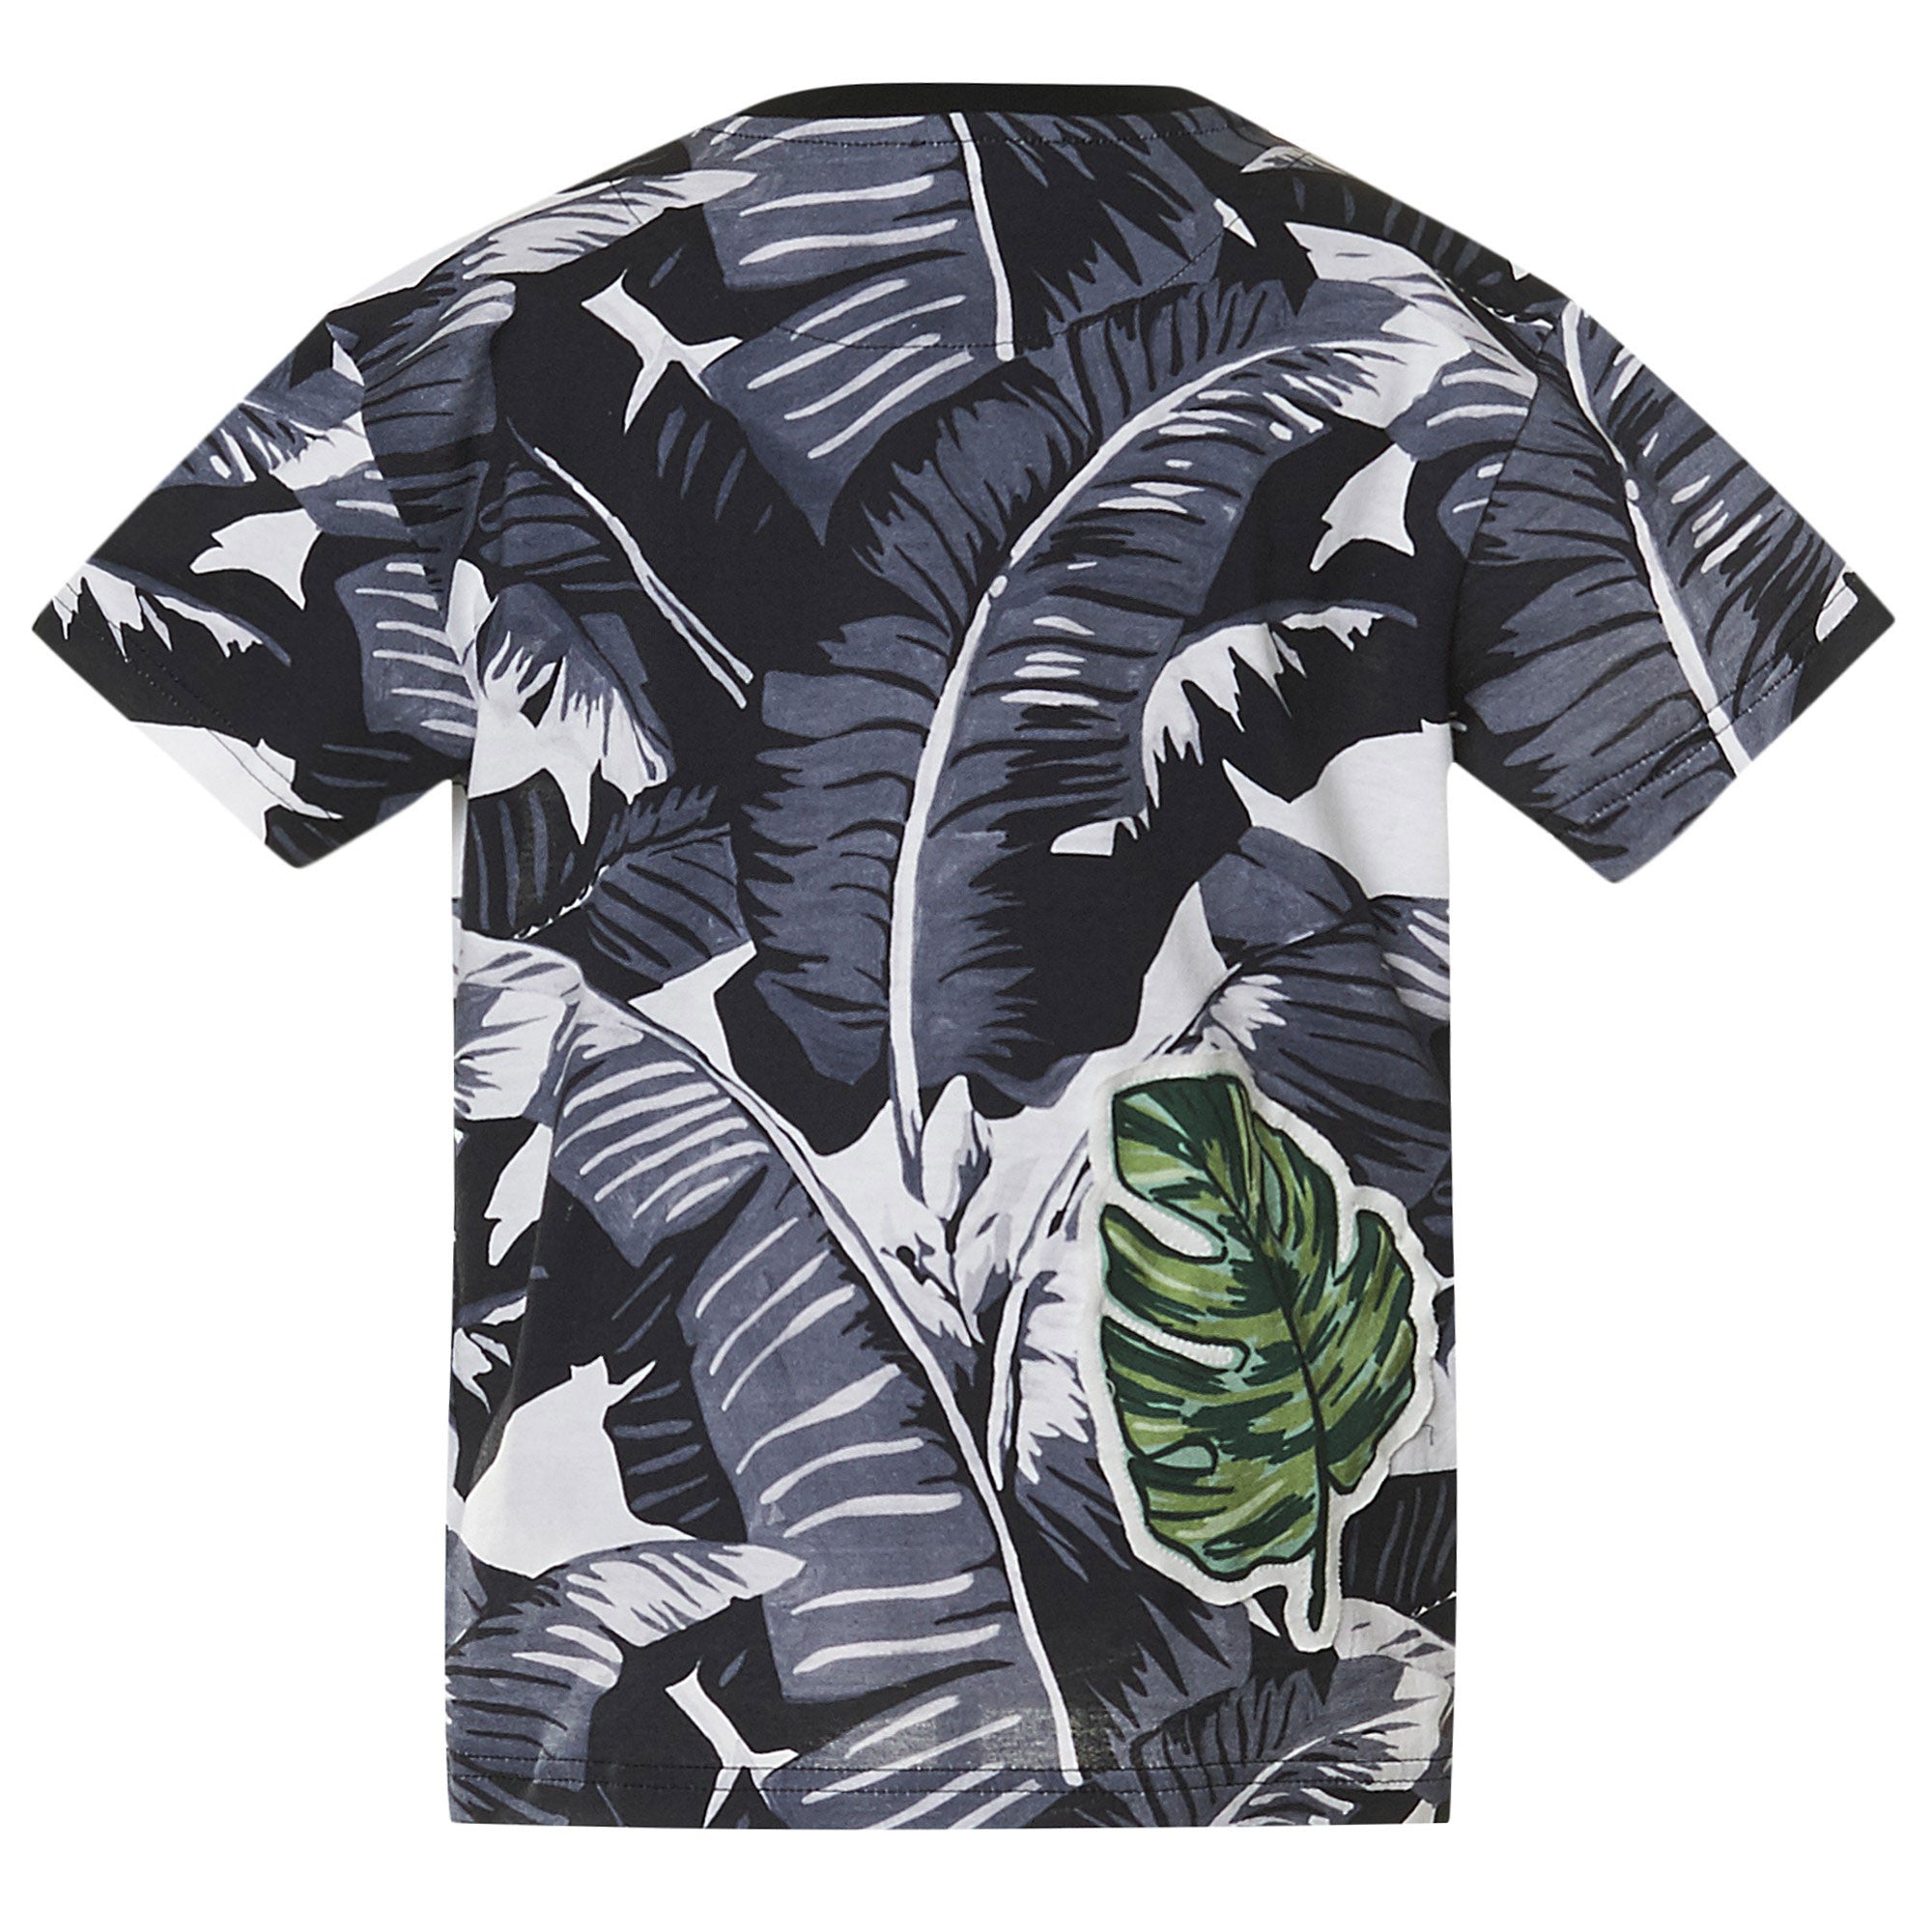 Boys Black Cotton T-Shirt With Leaf Print Trims - CÉMAROSE | Children's Fashion Store - 2